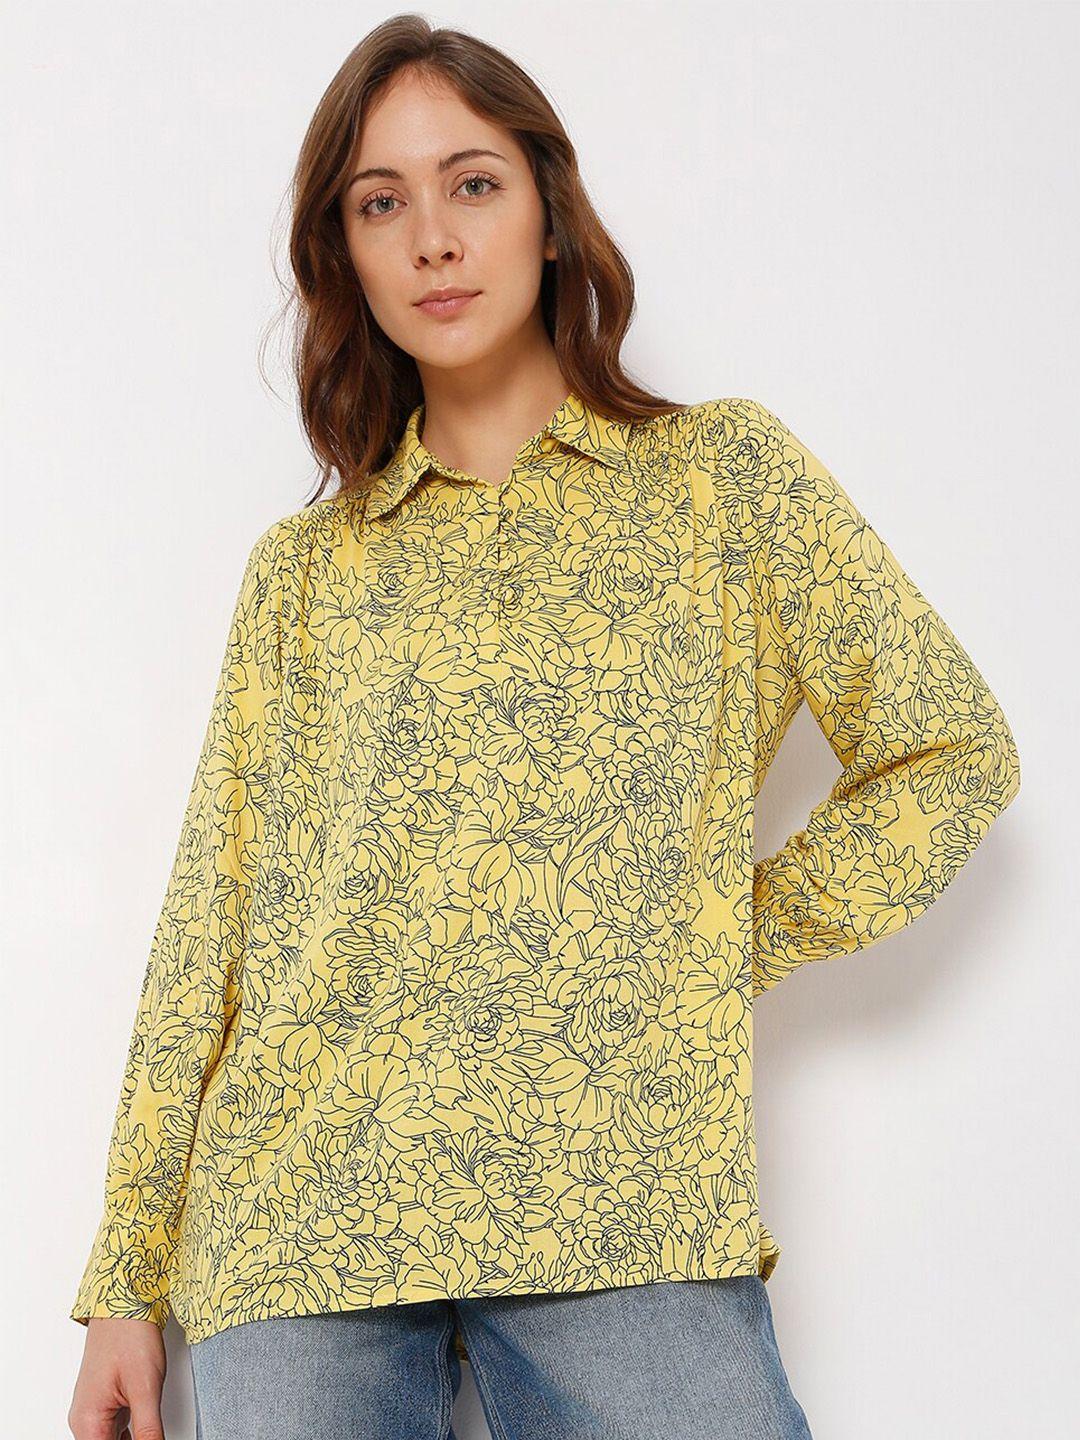 vero moda yellow floral print top